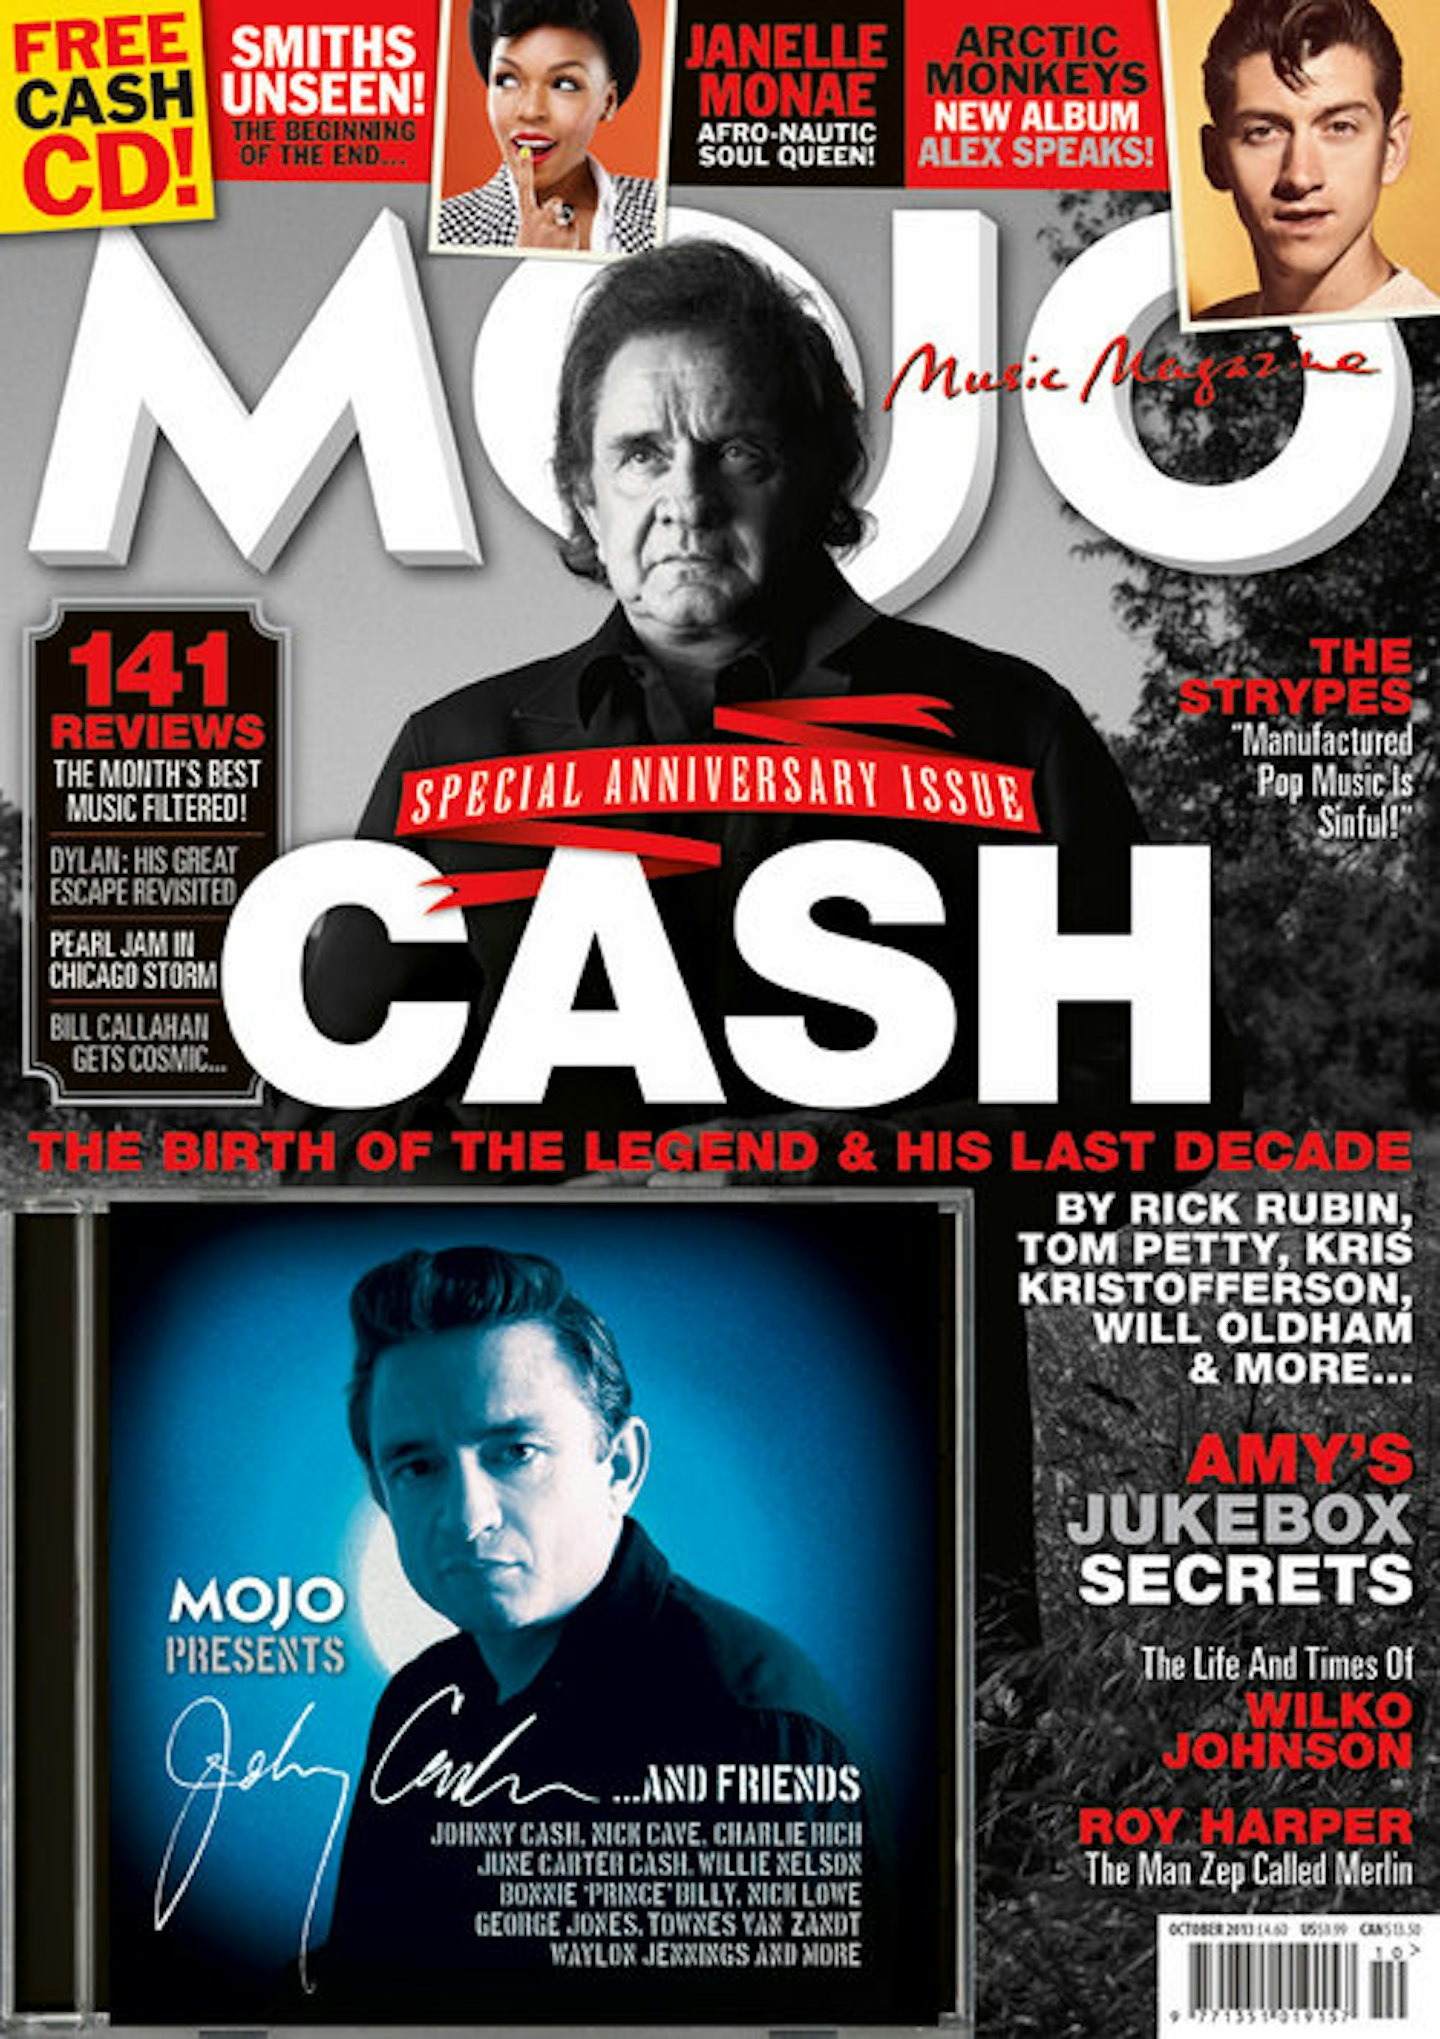 MOJO Issue 239 / October 2013